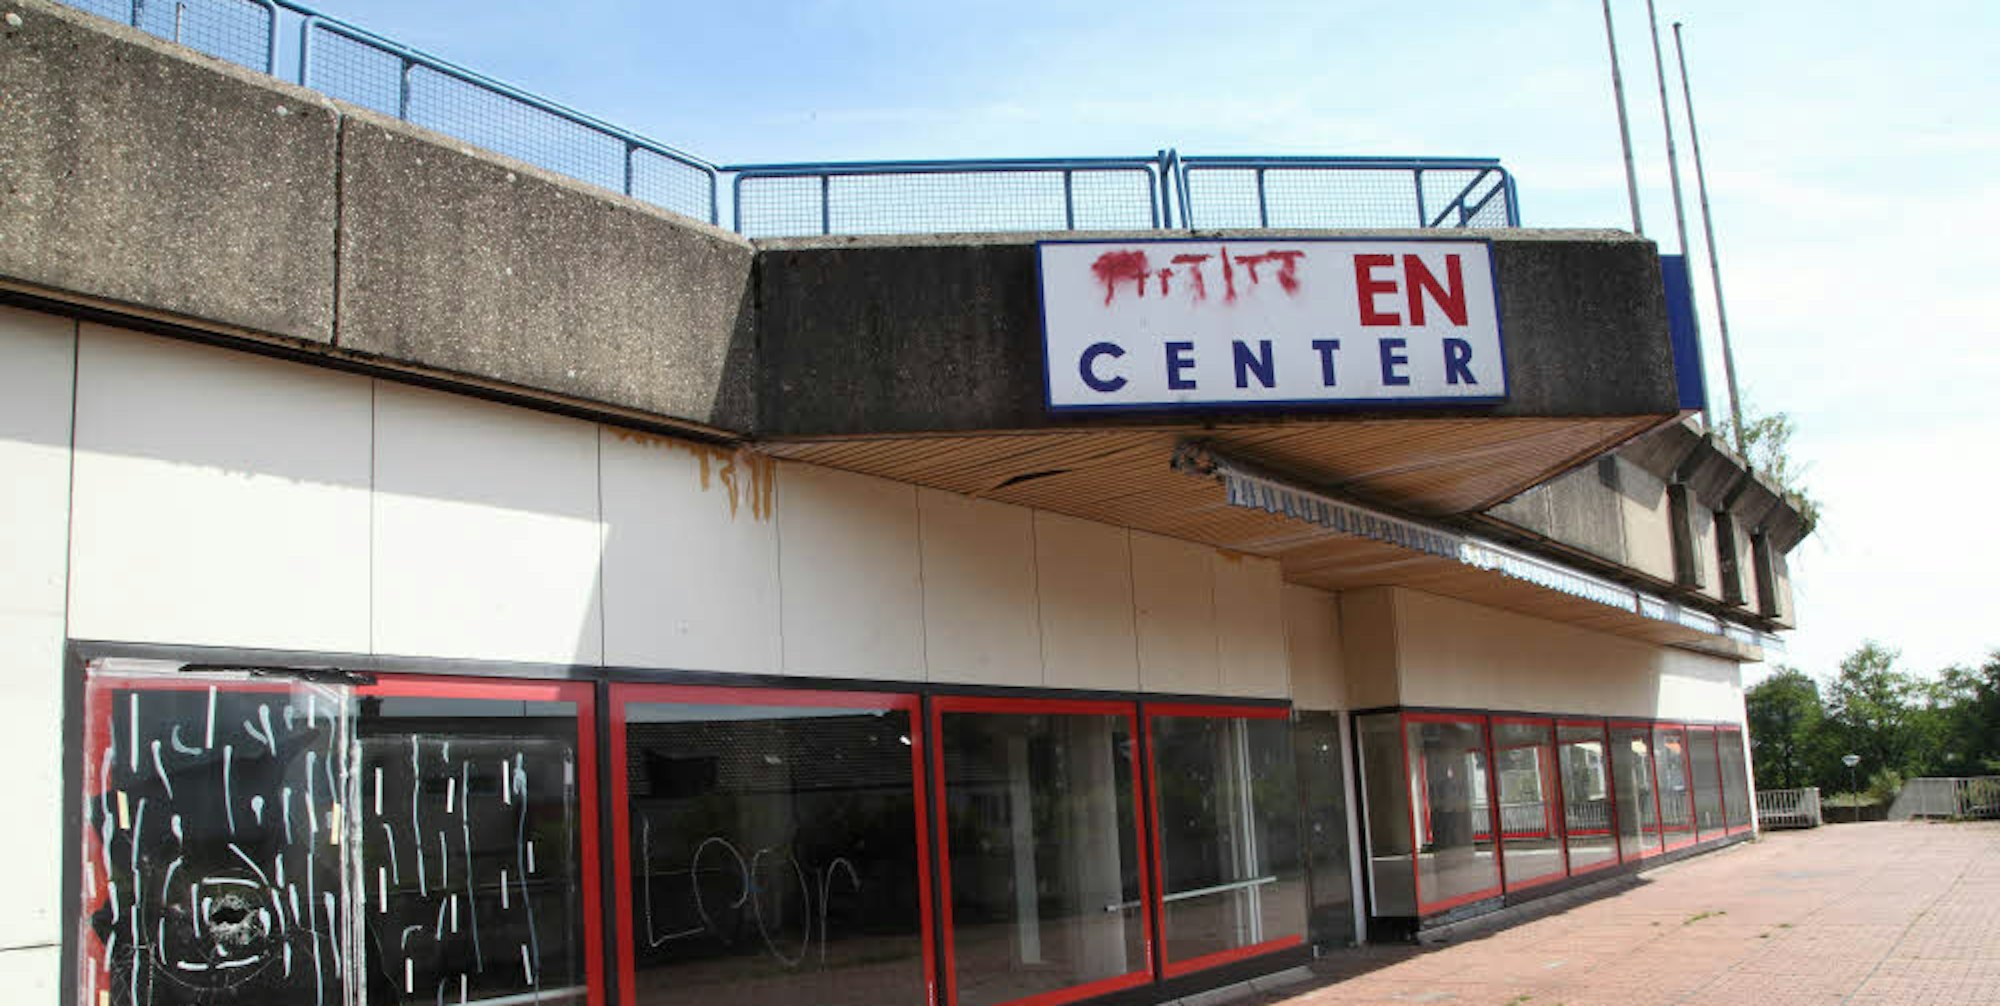 Seit 2008 steht das ehemalige Löwen-Center an der Schloßstraße leer. Der Verfall hat längst eingesetzt.